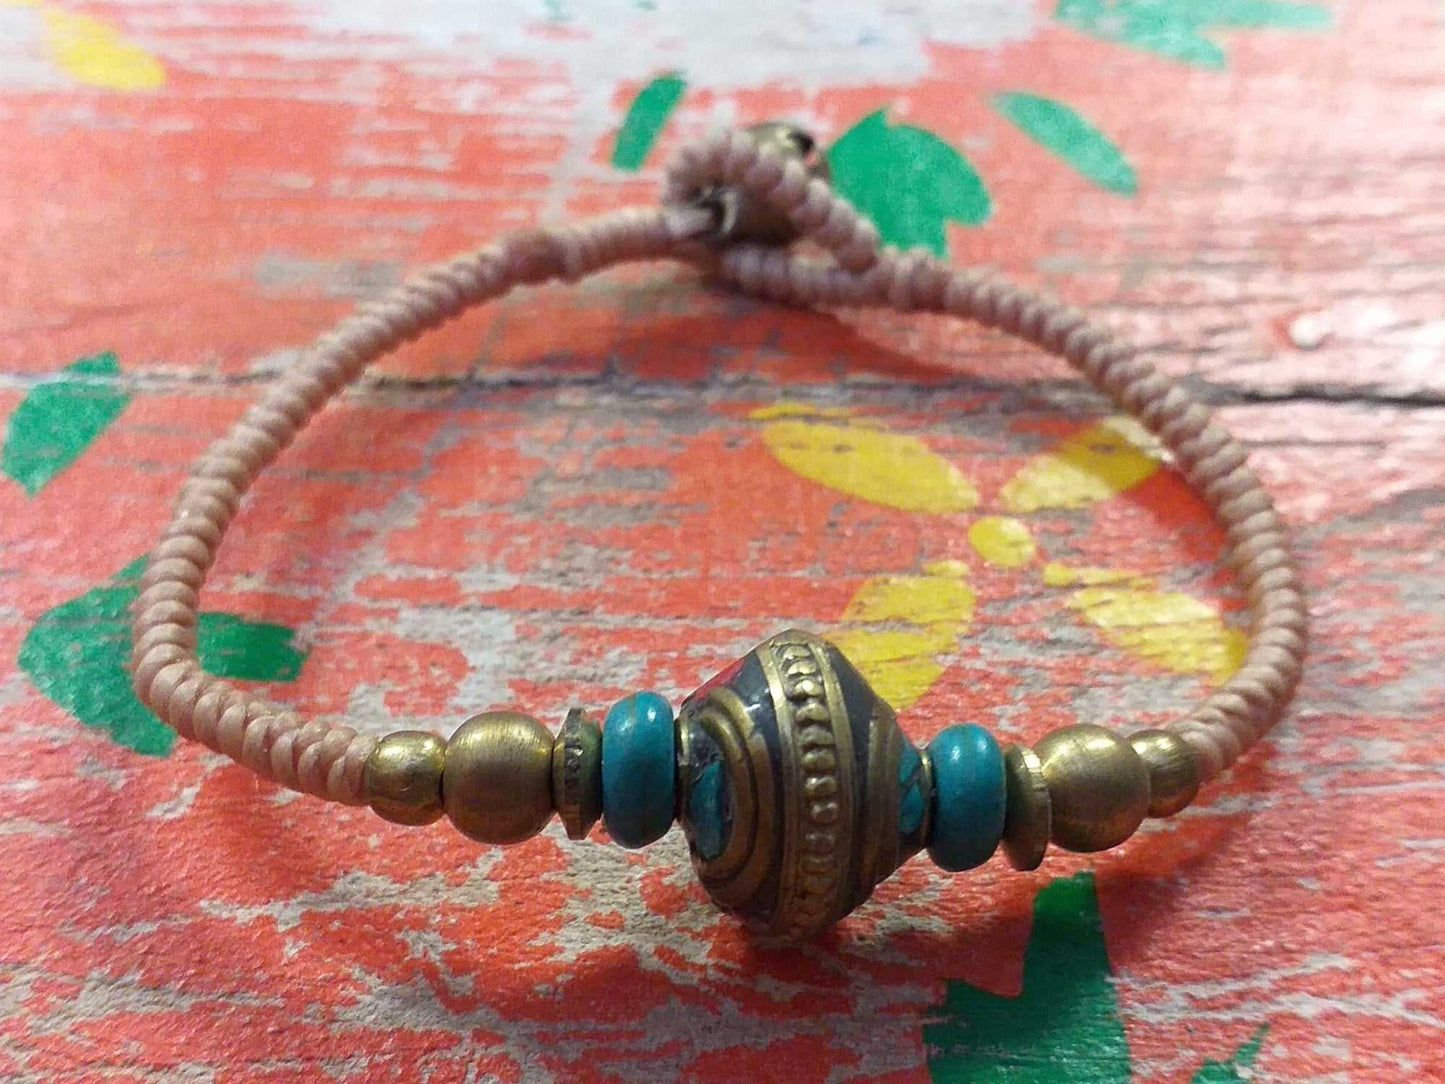 Tibet Friendship Bracelet